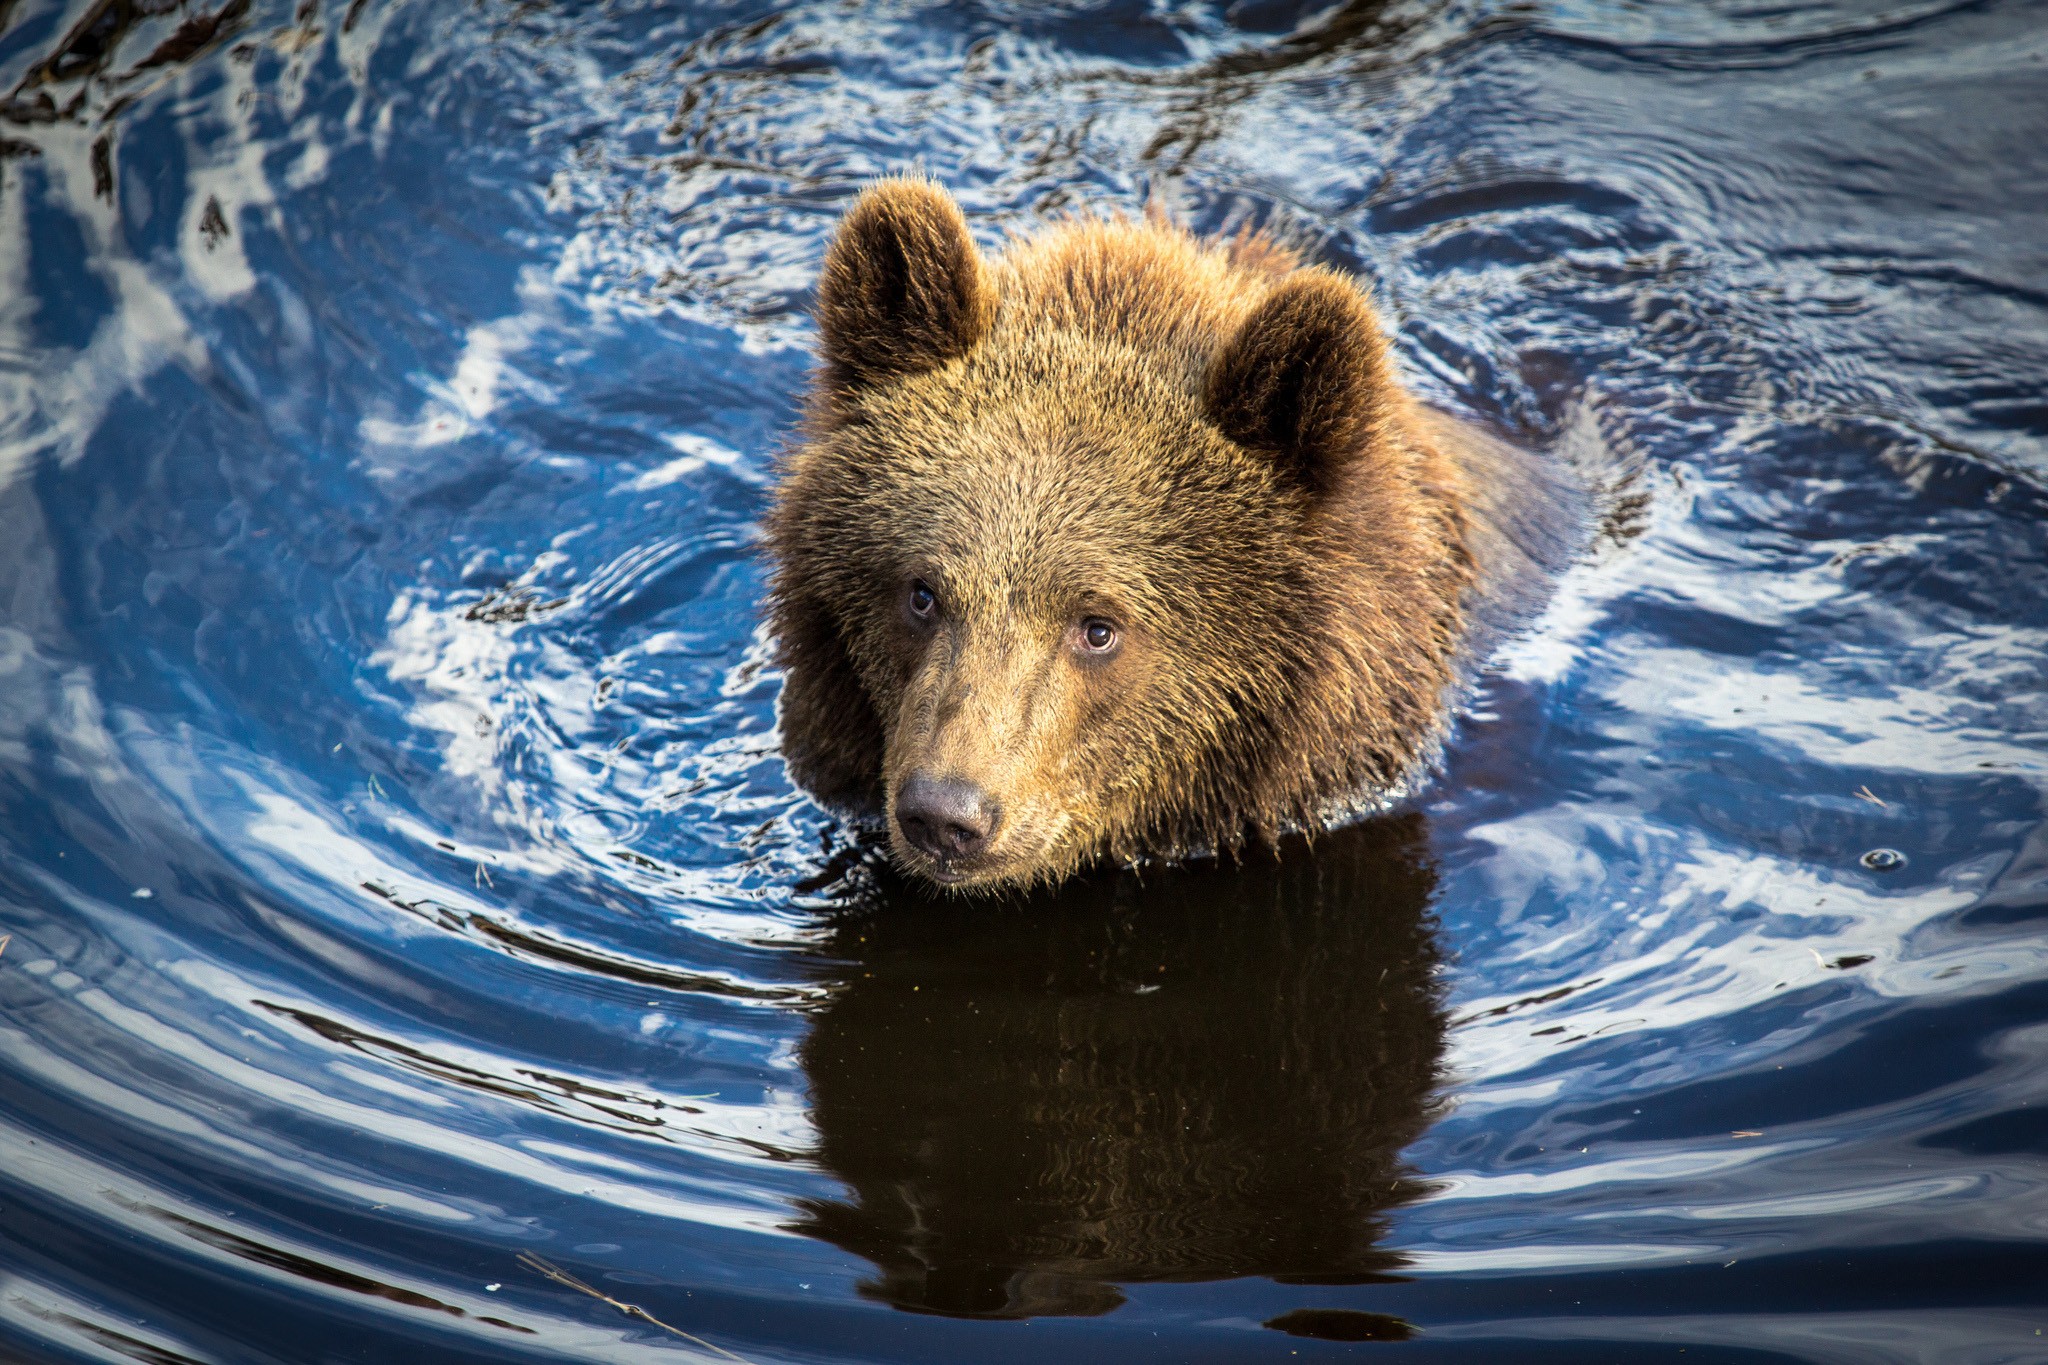 General 2048x1365 bears mammals wildlife animals in water